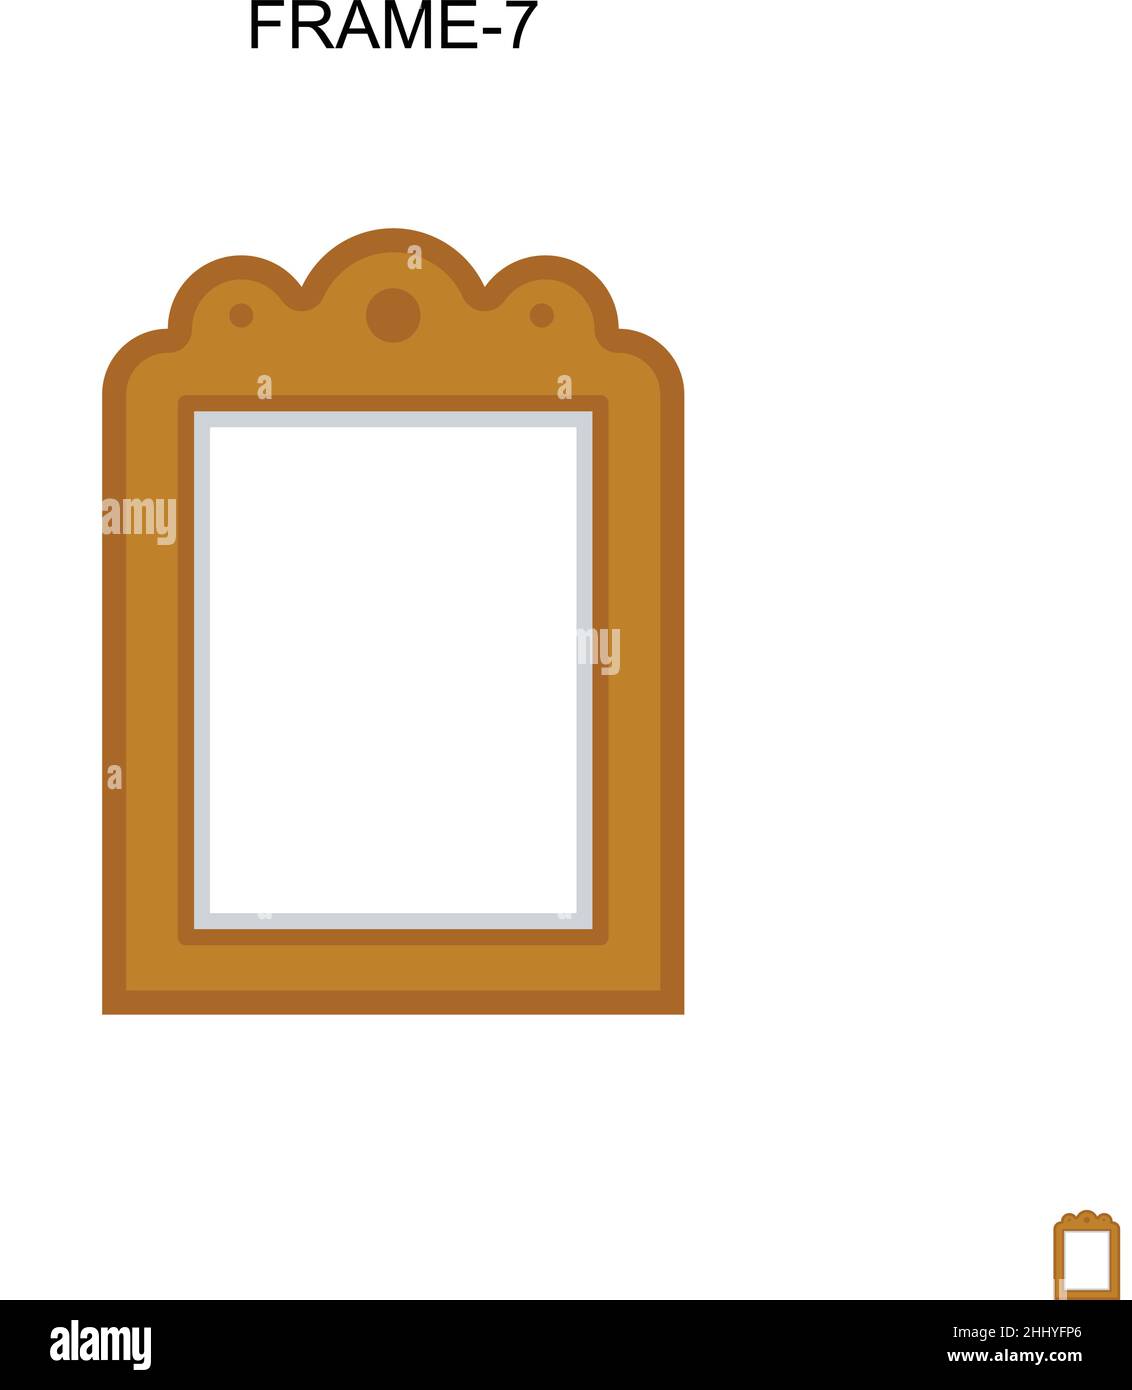 Icône de vecteur simple Frame-7.Modèle de conception de symbole d'illustration pour élément d'interface utilisateur Web mobile. Illustration de Vecteur